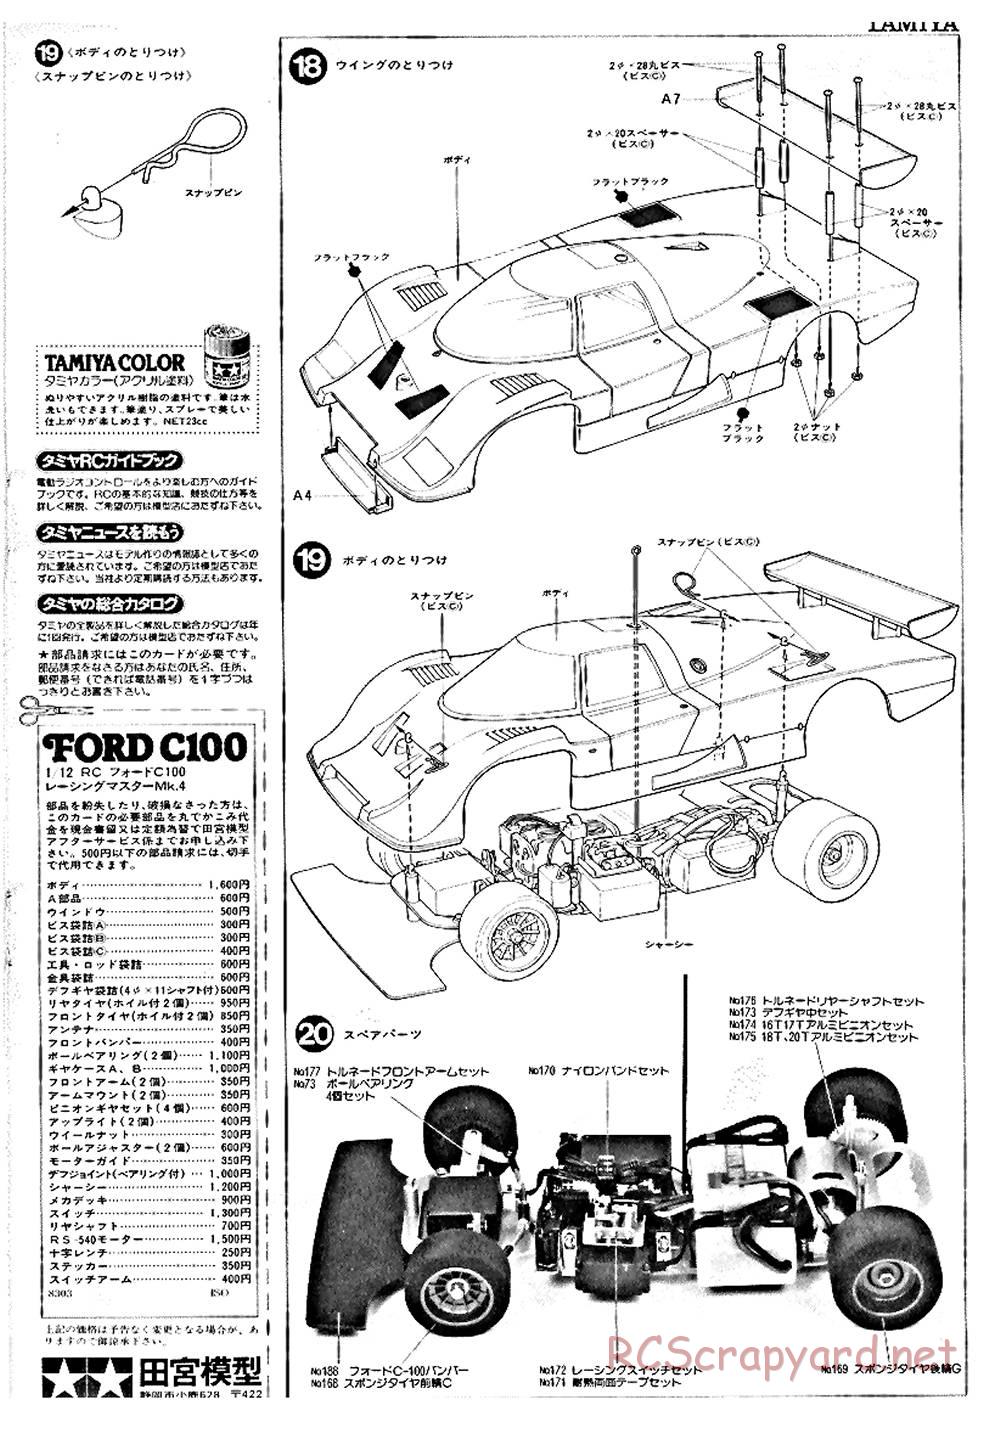 Tamiya - Ford C100 - RM MK.4 - 58033 - Manual - Page 9